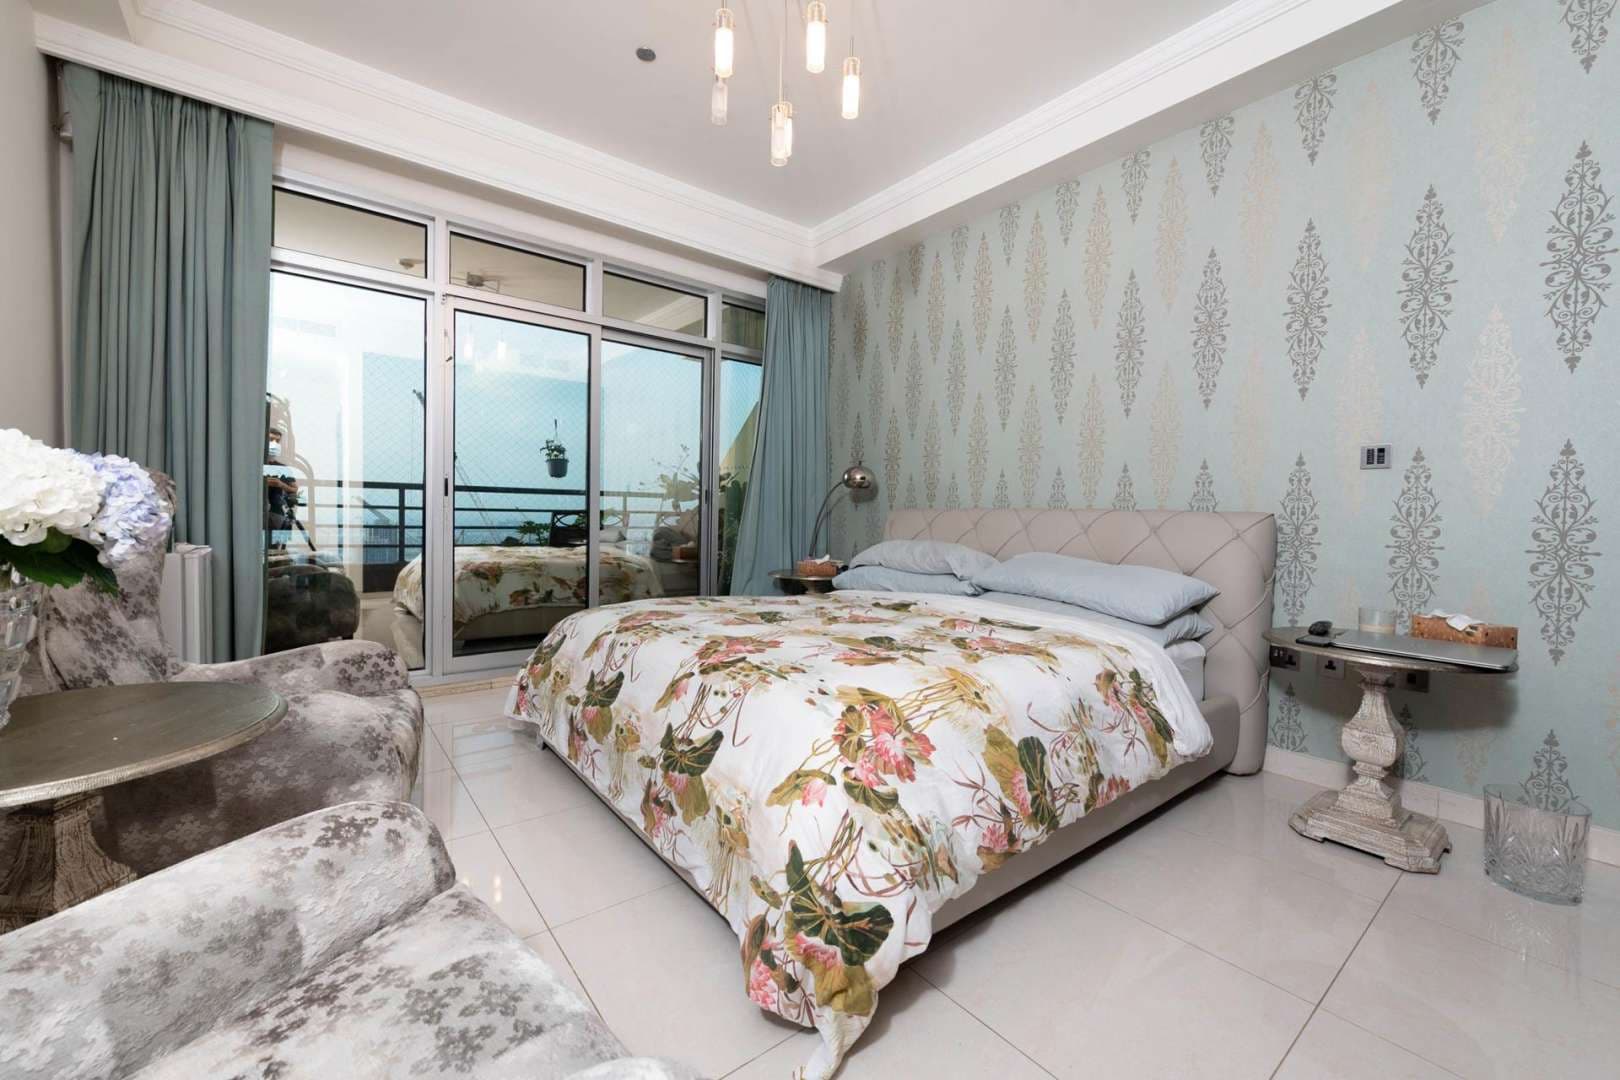 5 Bedroom Penthouse For Sale Emirates Crown Lp05273 31d20e194c691e0.jpg